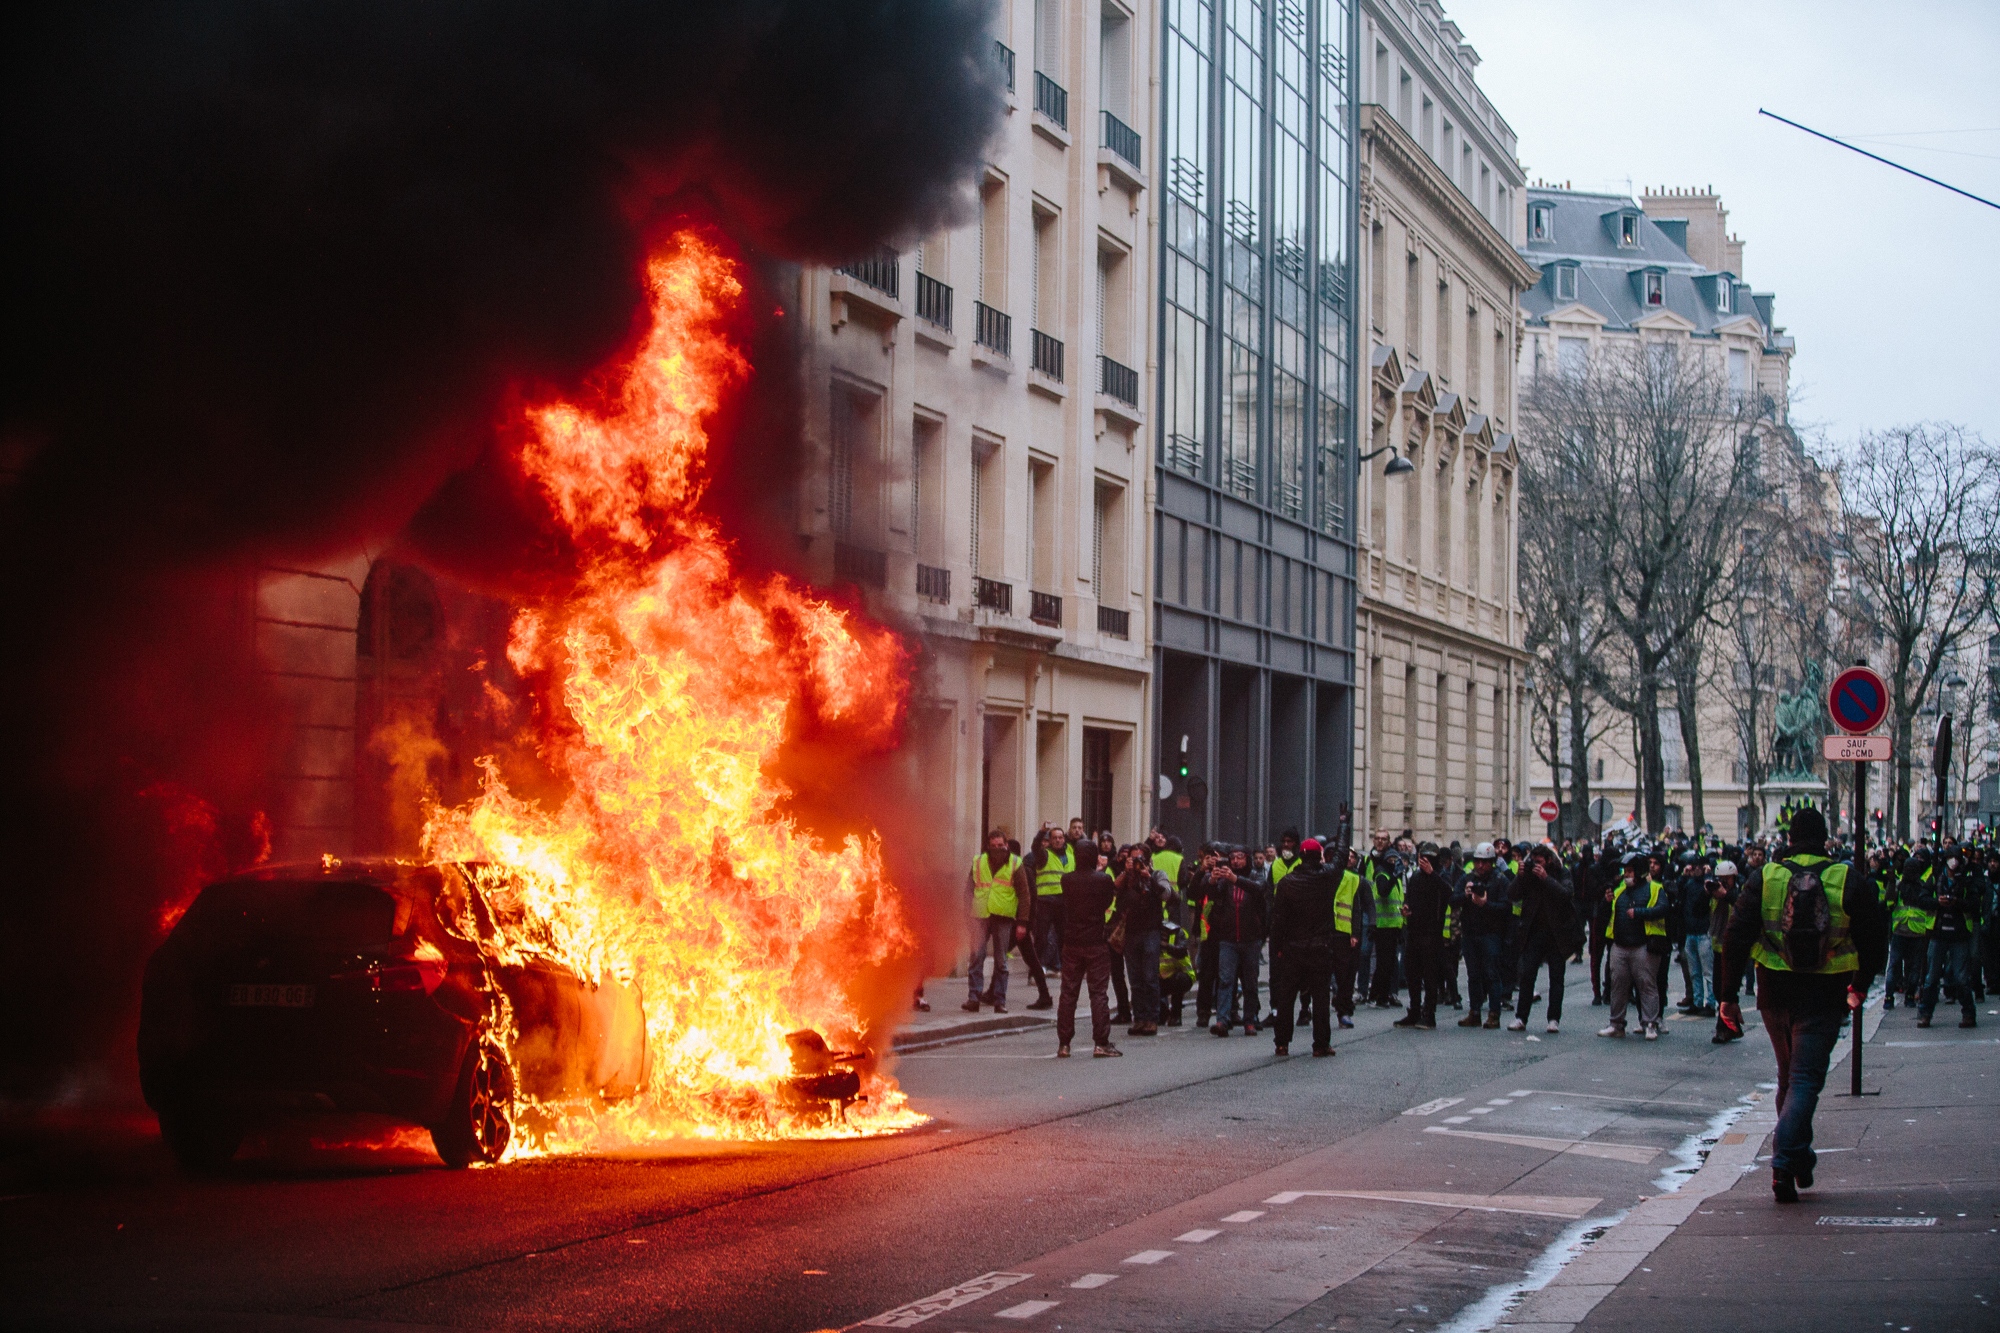 Gilets Jaunes Protest in Paris - 